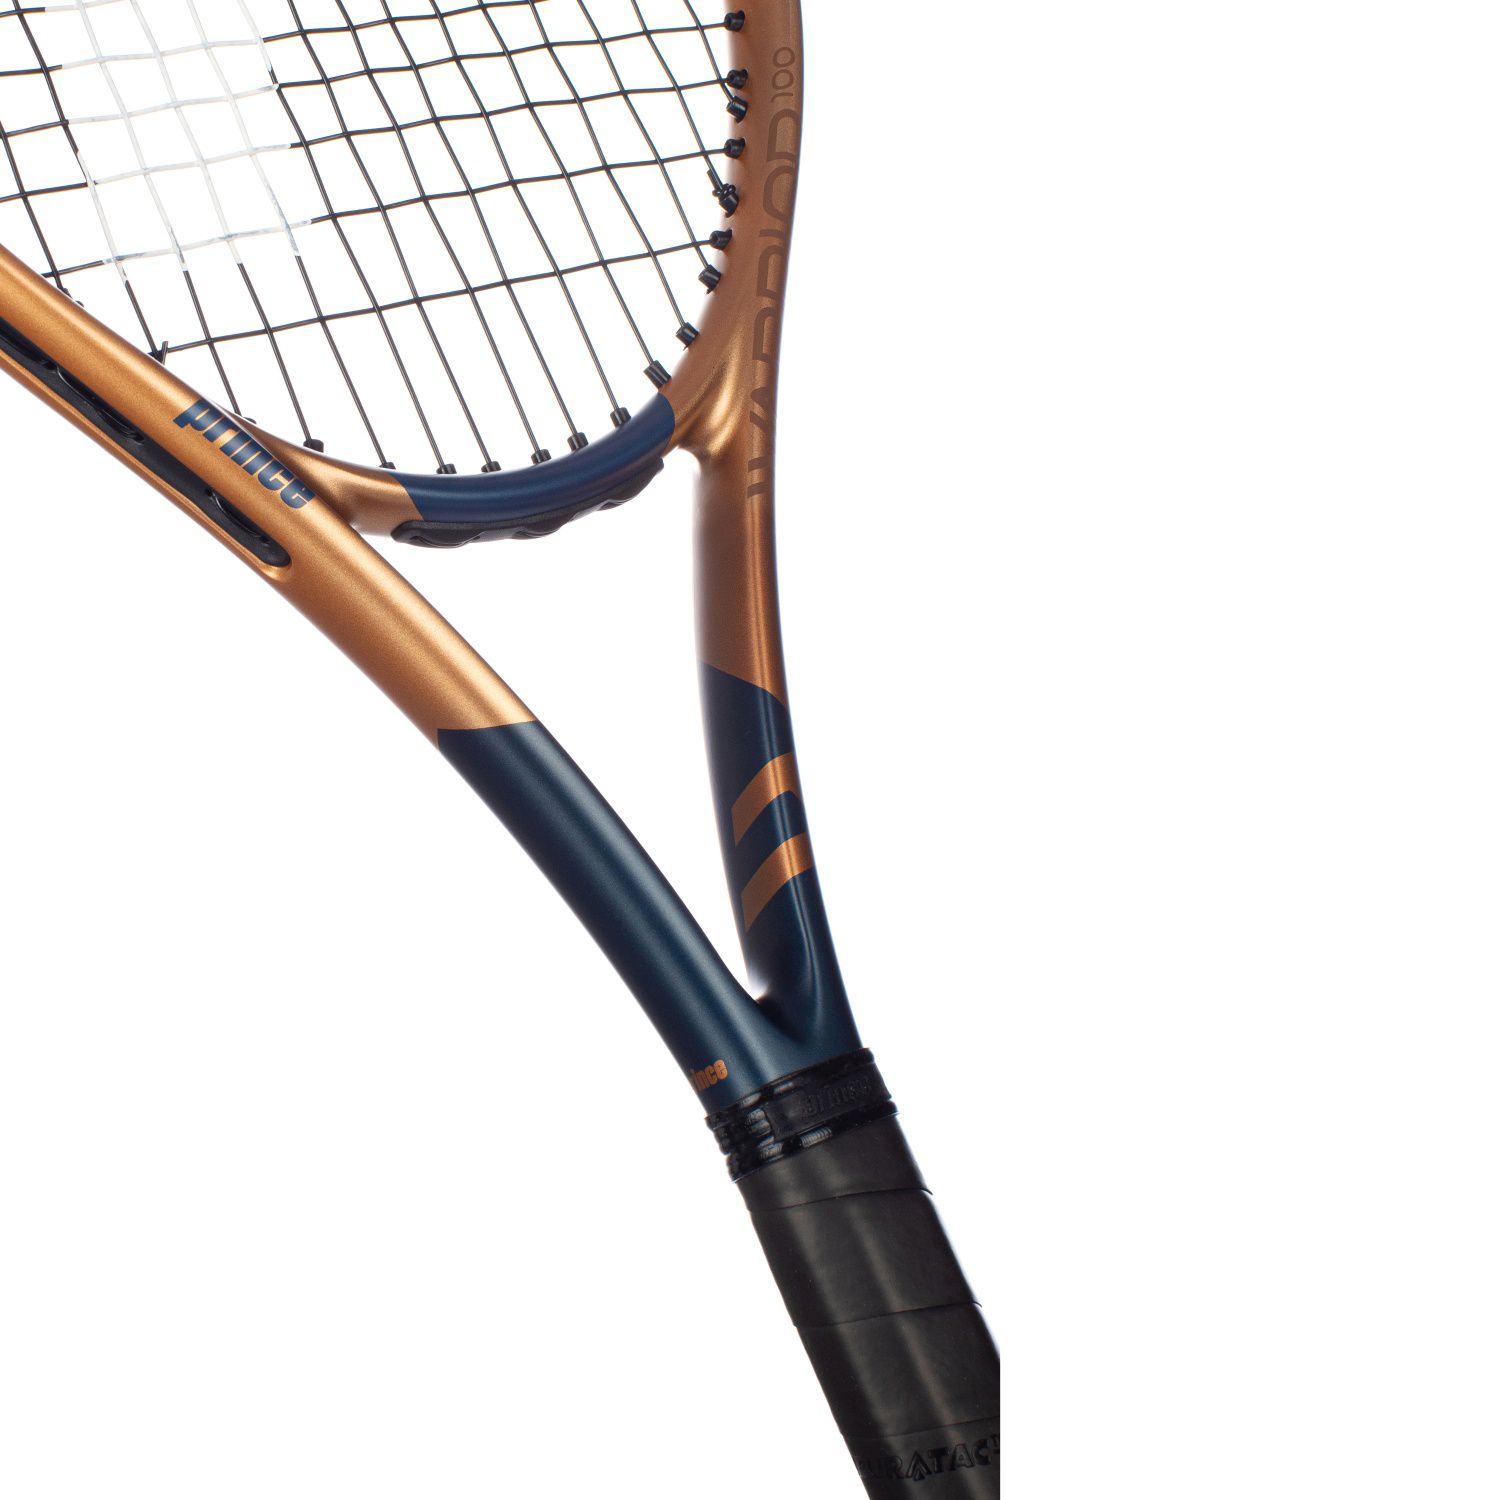 Raqueta De Tenis Prince Warrior 100 285 G (encordada Y Con Funda)  MKP